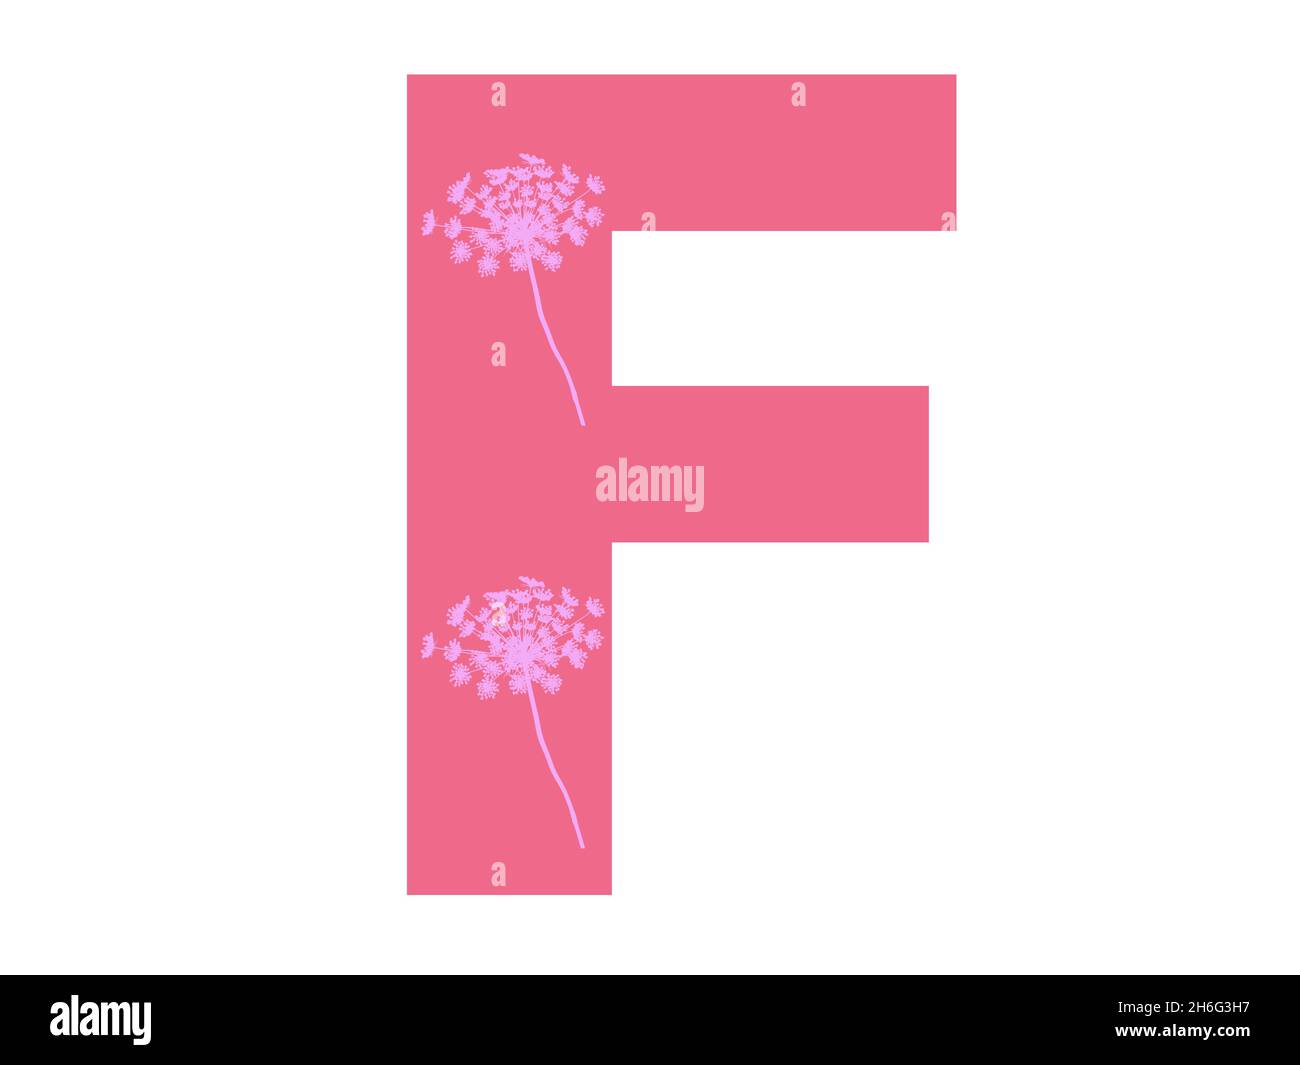 Lettera F dell'alfabeto realizzata con una silhouette di fiori rosa su sfondo rosa scuro, la lettera è isolata su sfondo bianco Foto Stock